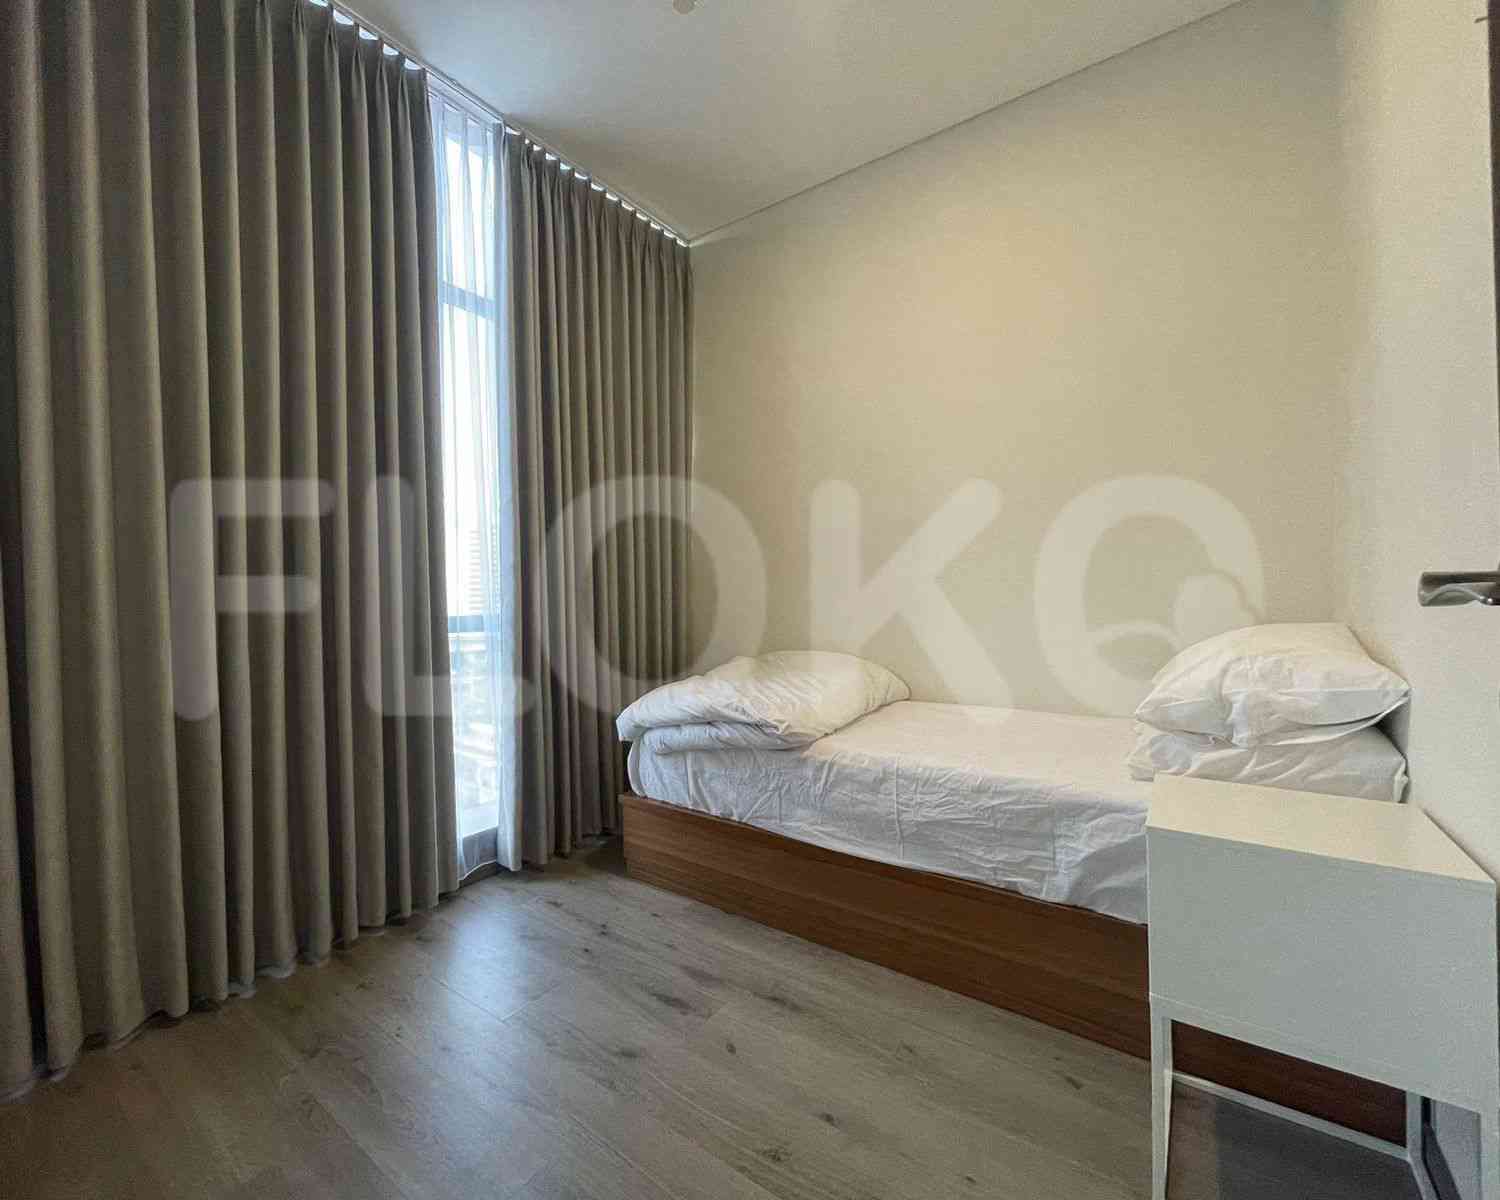 2 Bedroom on 8th Floor for Rent in Sudirman Suites Jakarta - fsua00 4